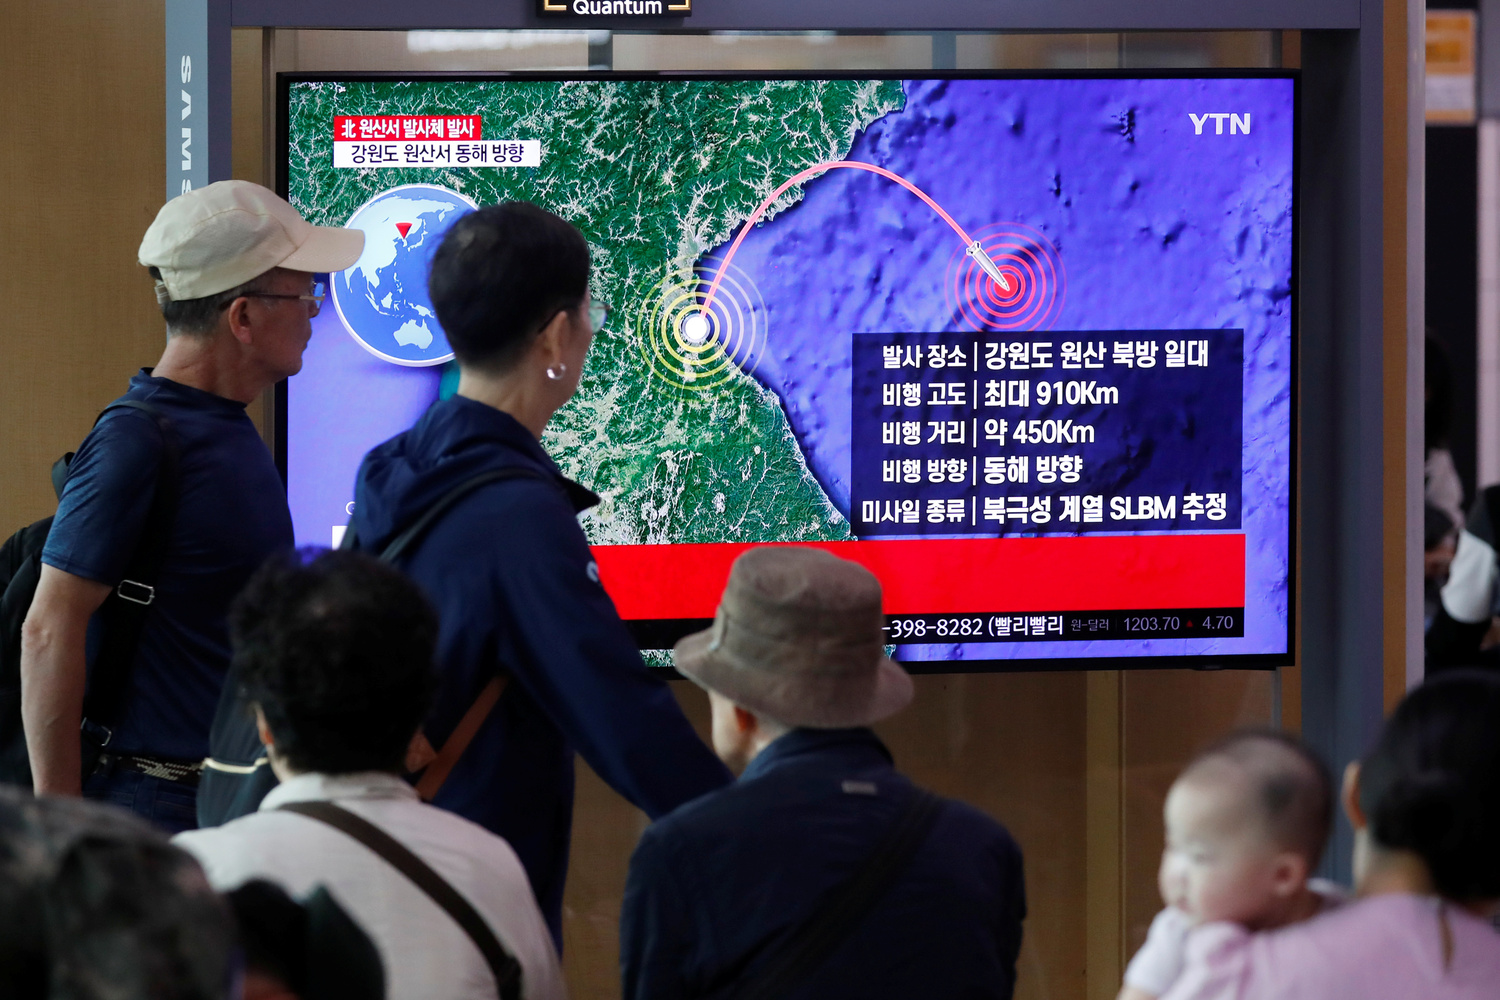 La gente guarda una TV che trasmette la notizia secondo cui si ritiene sia stato lanciato un missile dalla Corea del Nord da un sottomarino, a Seoul, Corea del Sud, 2 ottobre 2019. REUTERS/Kim Hong-Ji